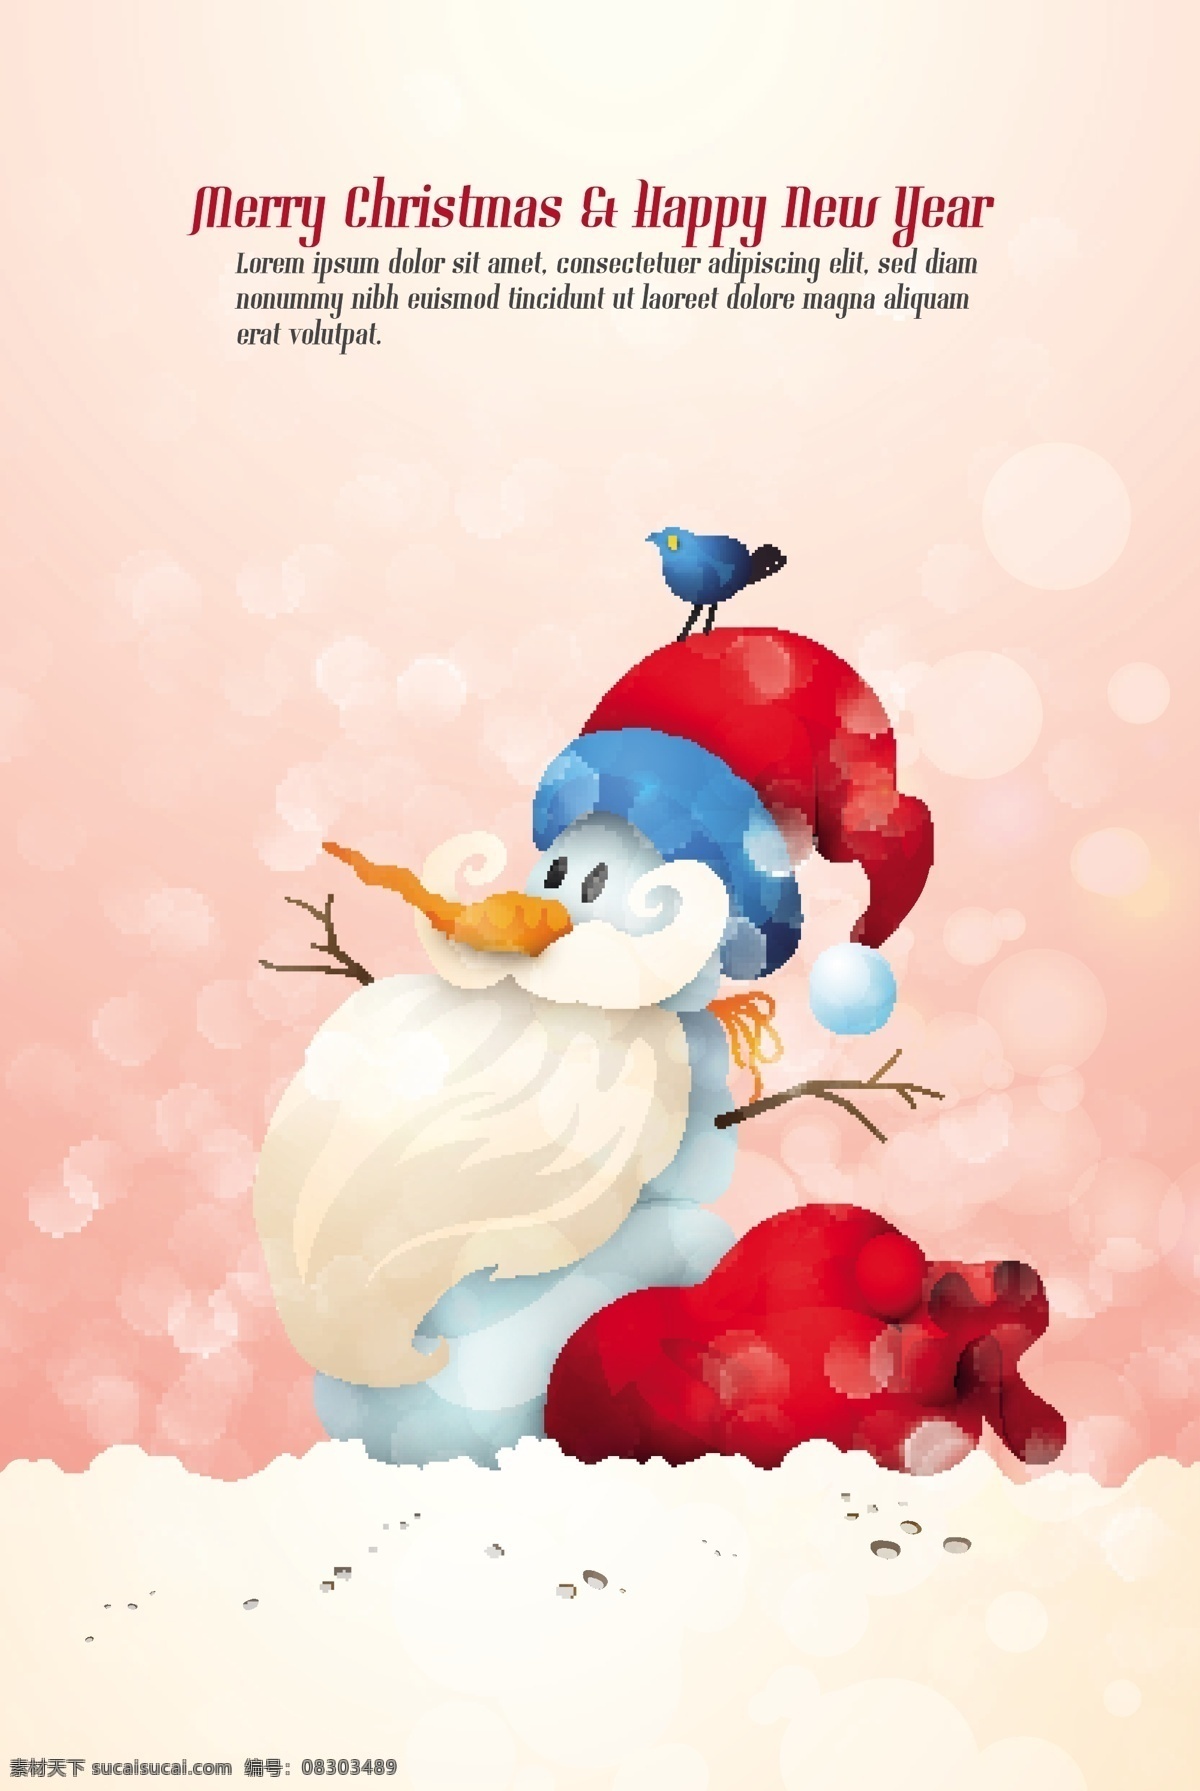 梦幻 雪人 插画 矢量 包裹 冬季 胡萝卜 可爱 气泡 圣诞节 圣诞老人 圣诞帽 小鸟 雪花 树枝 节日素材